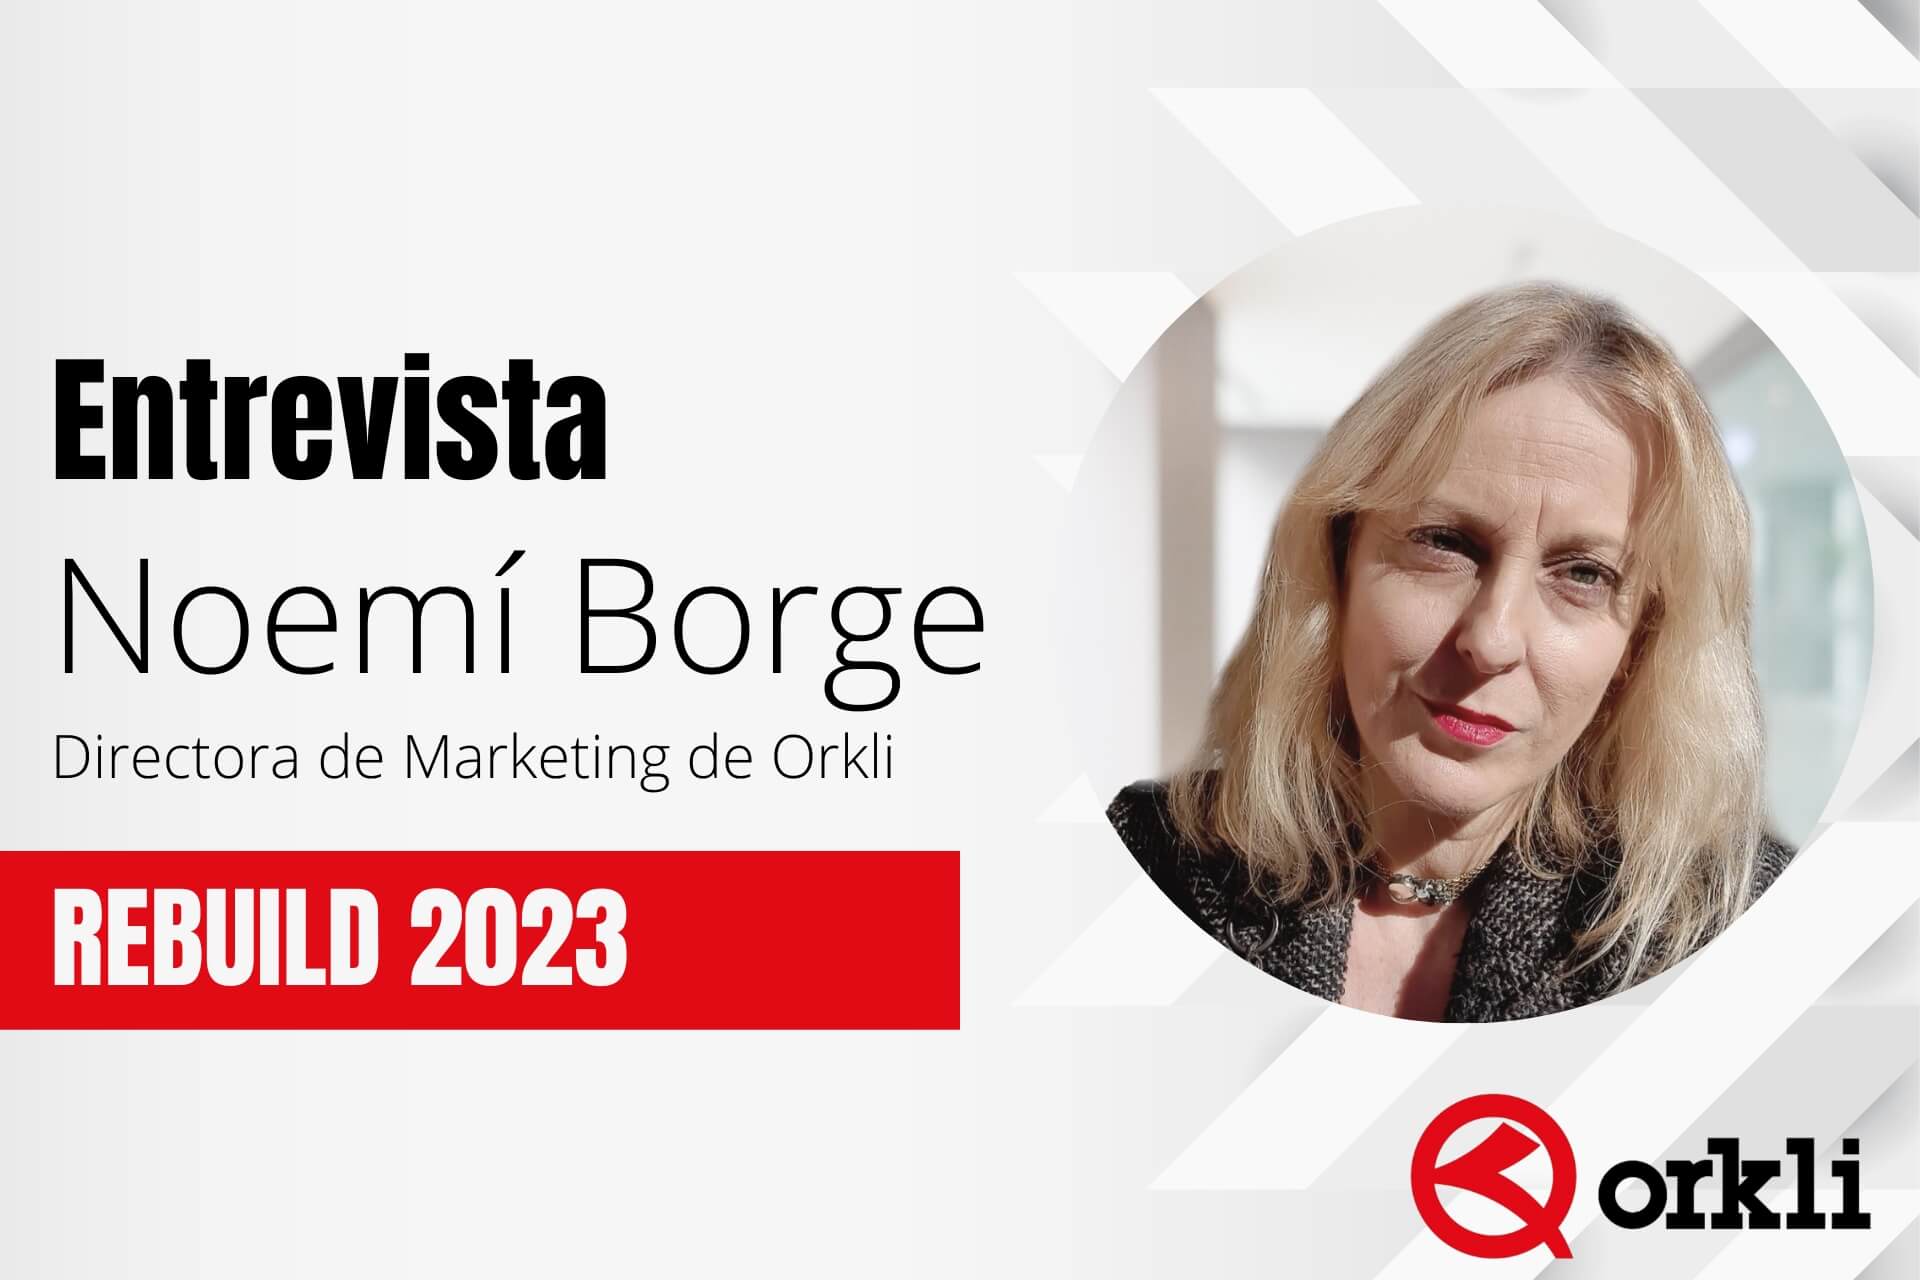 Noemí Borge, directora de Marketing de Orkli, nos habla de REBUILD